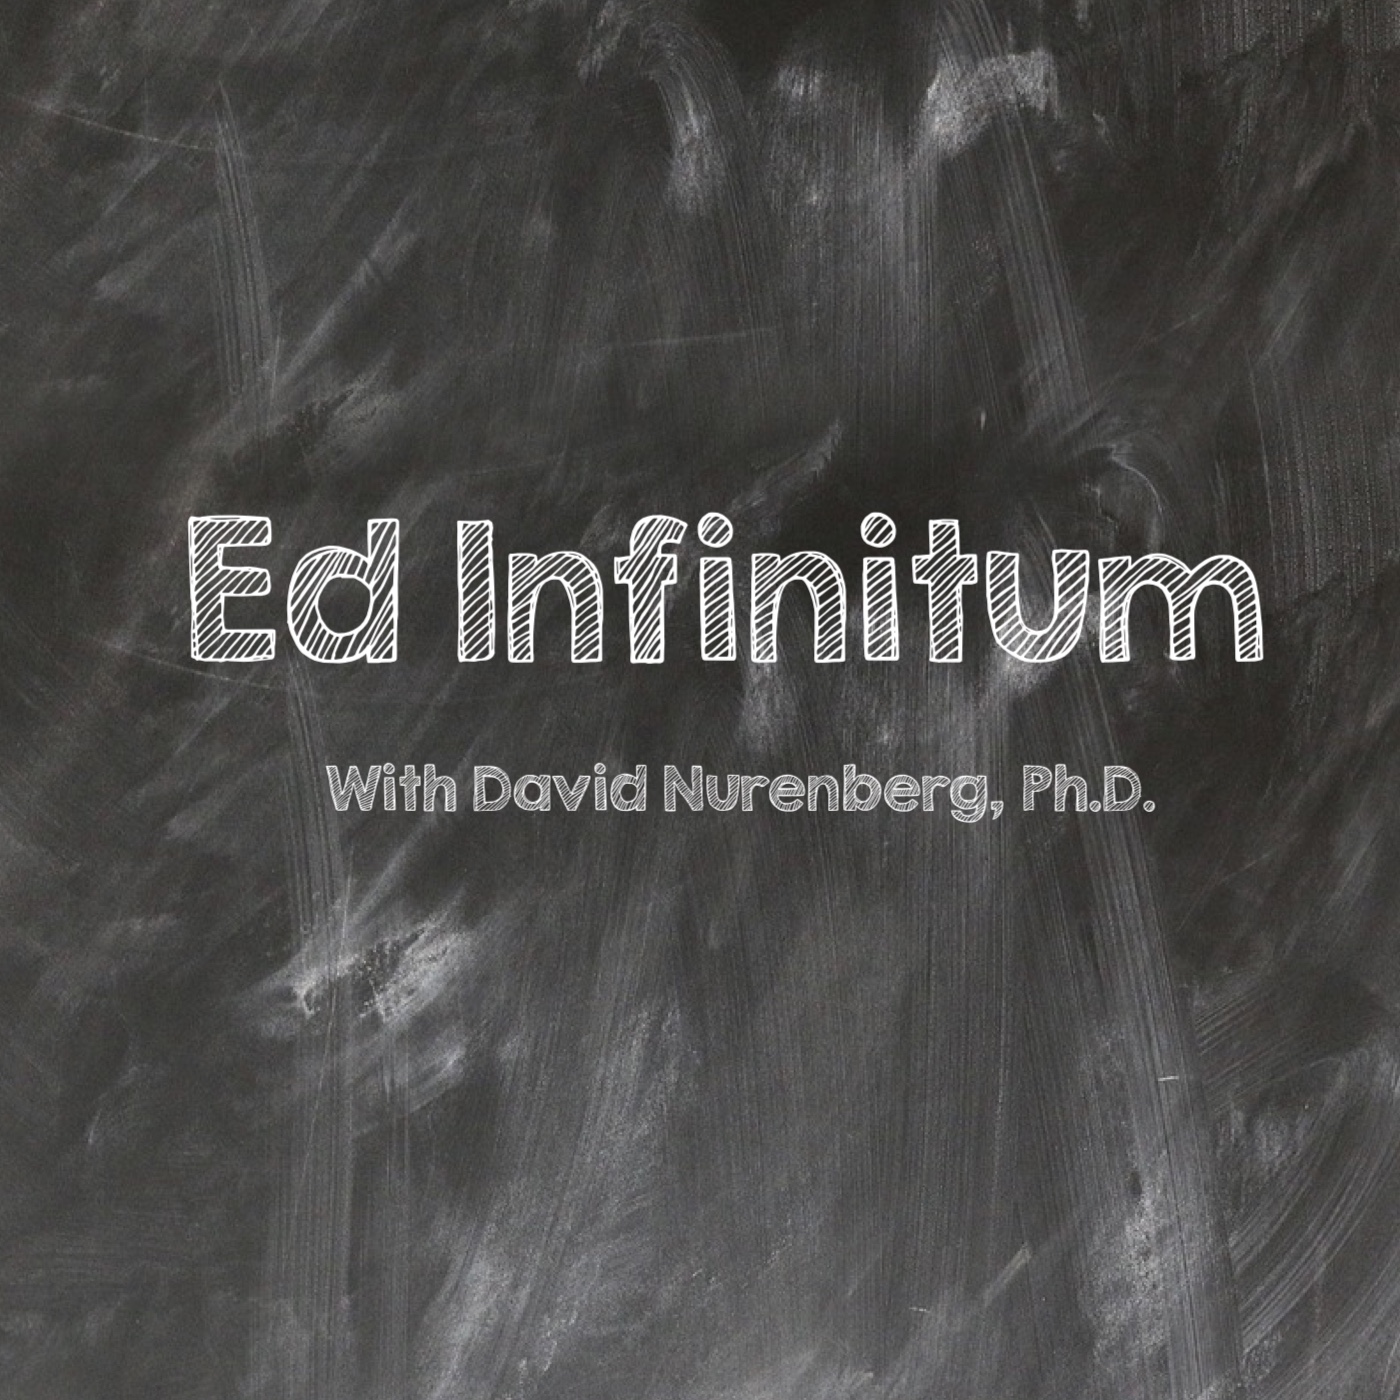 www.ed-infinitum.com